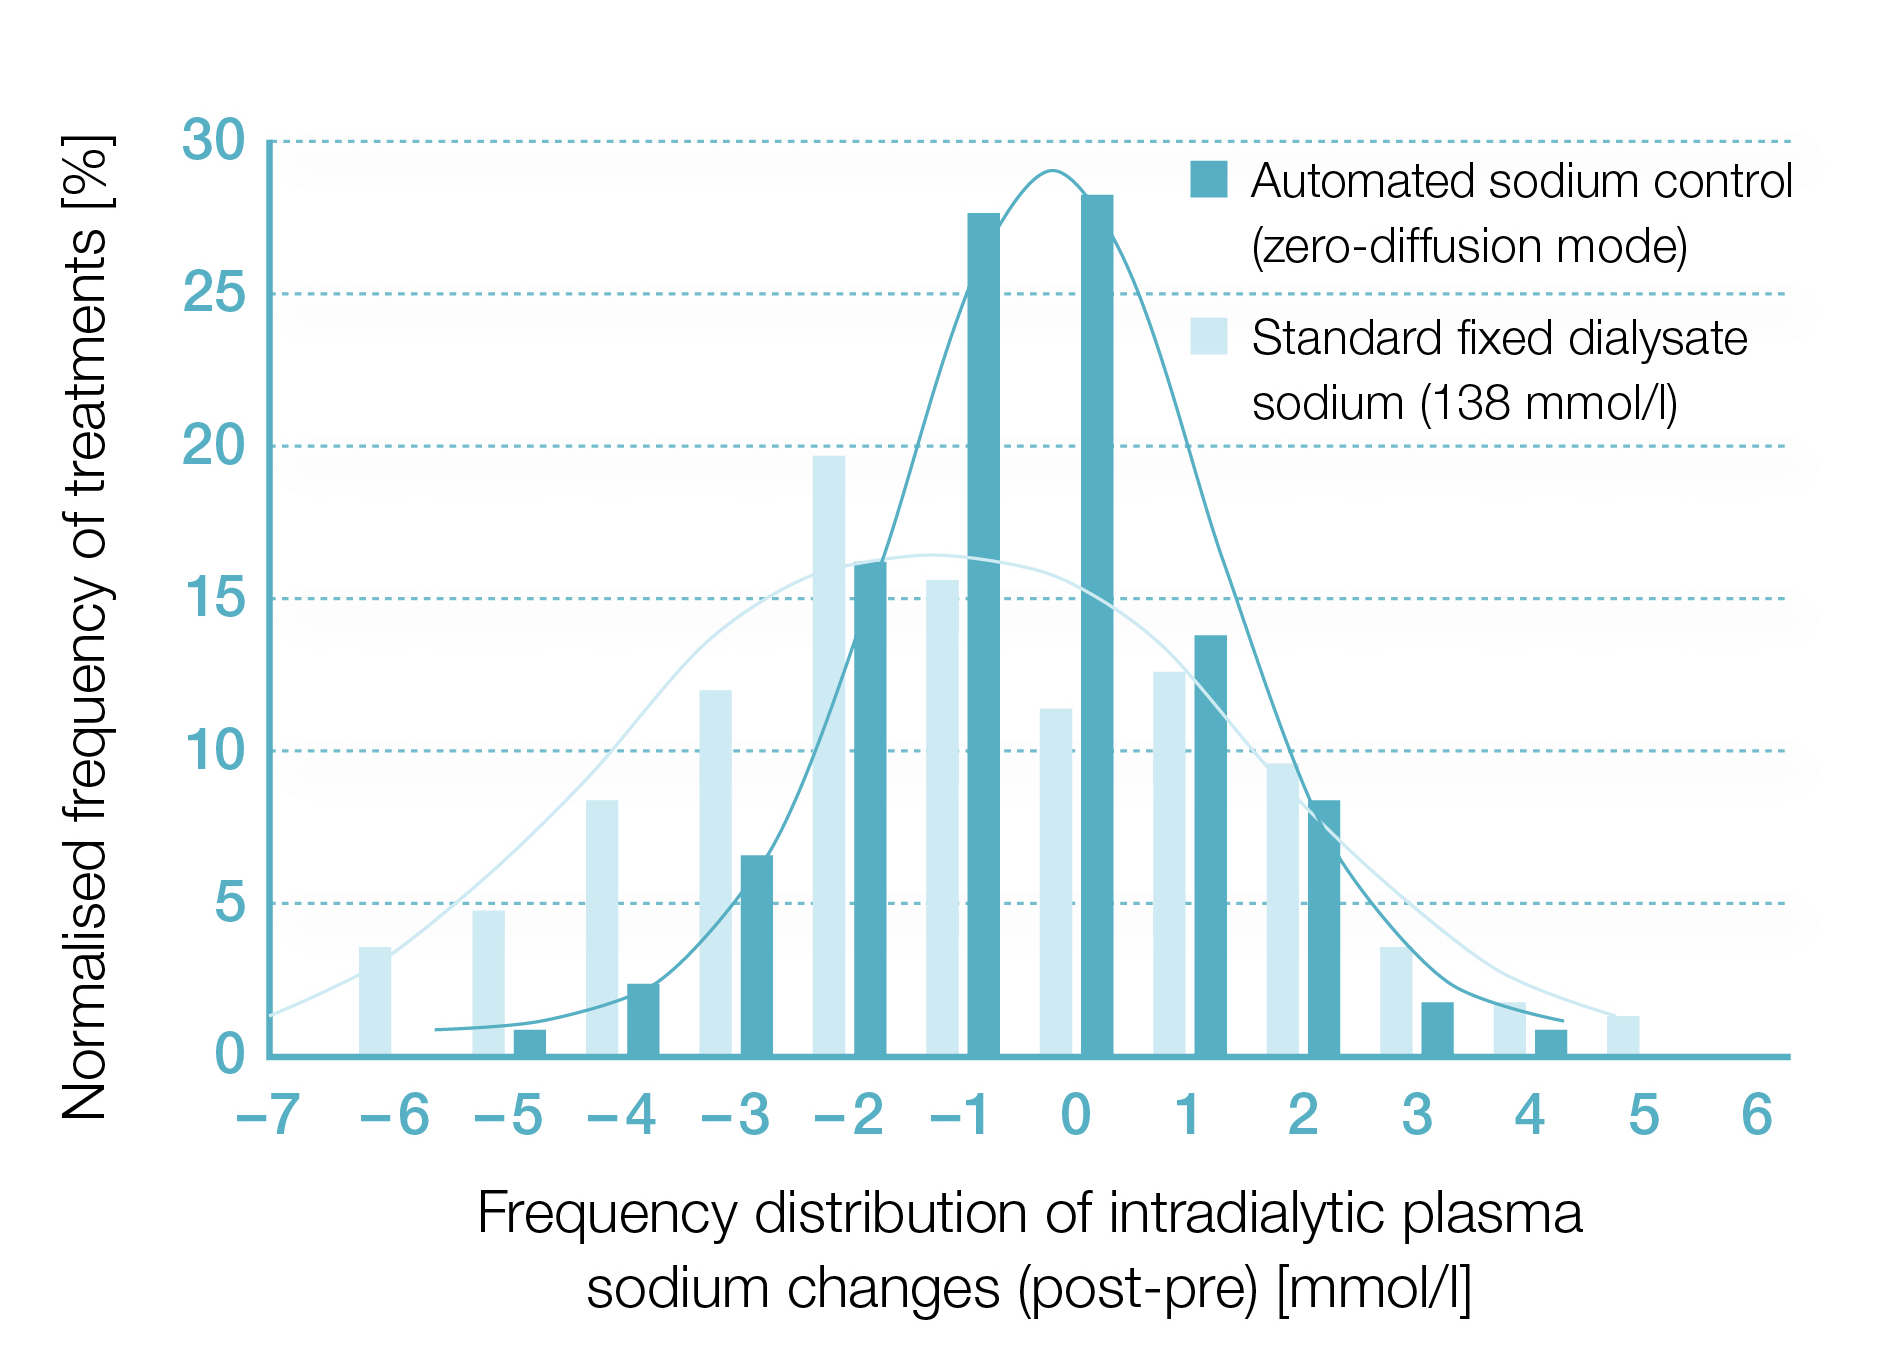 Distribuição das alterações do sódio plasmático